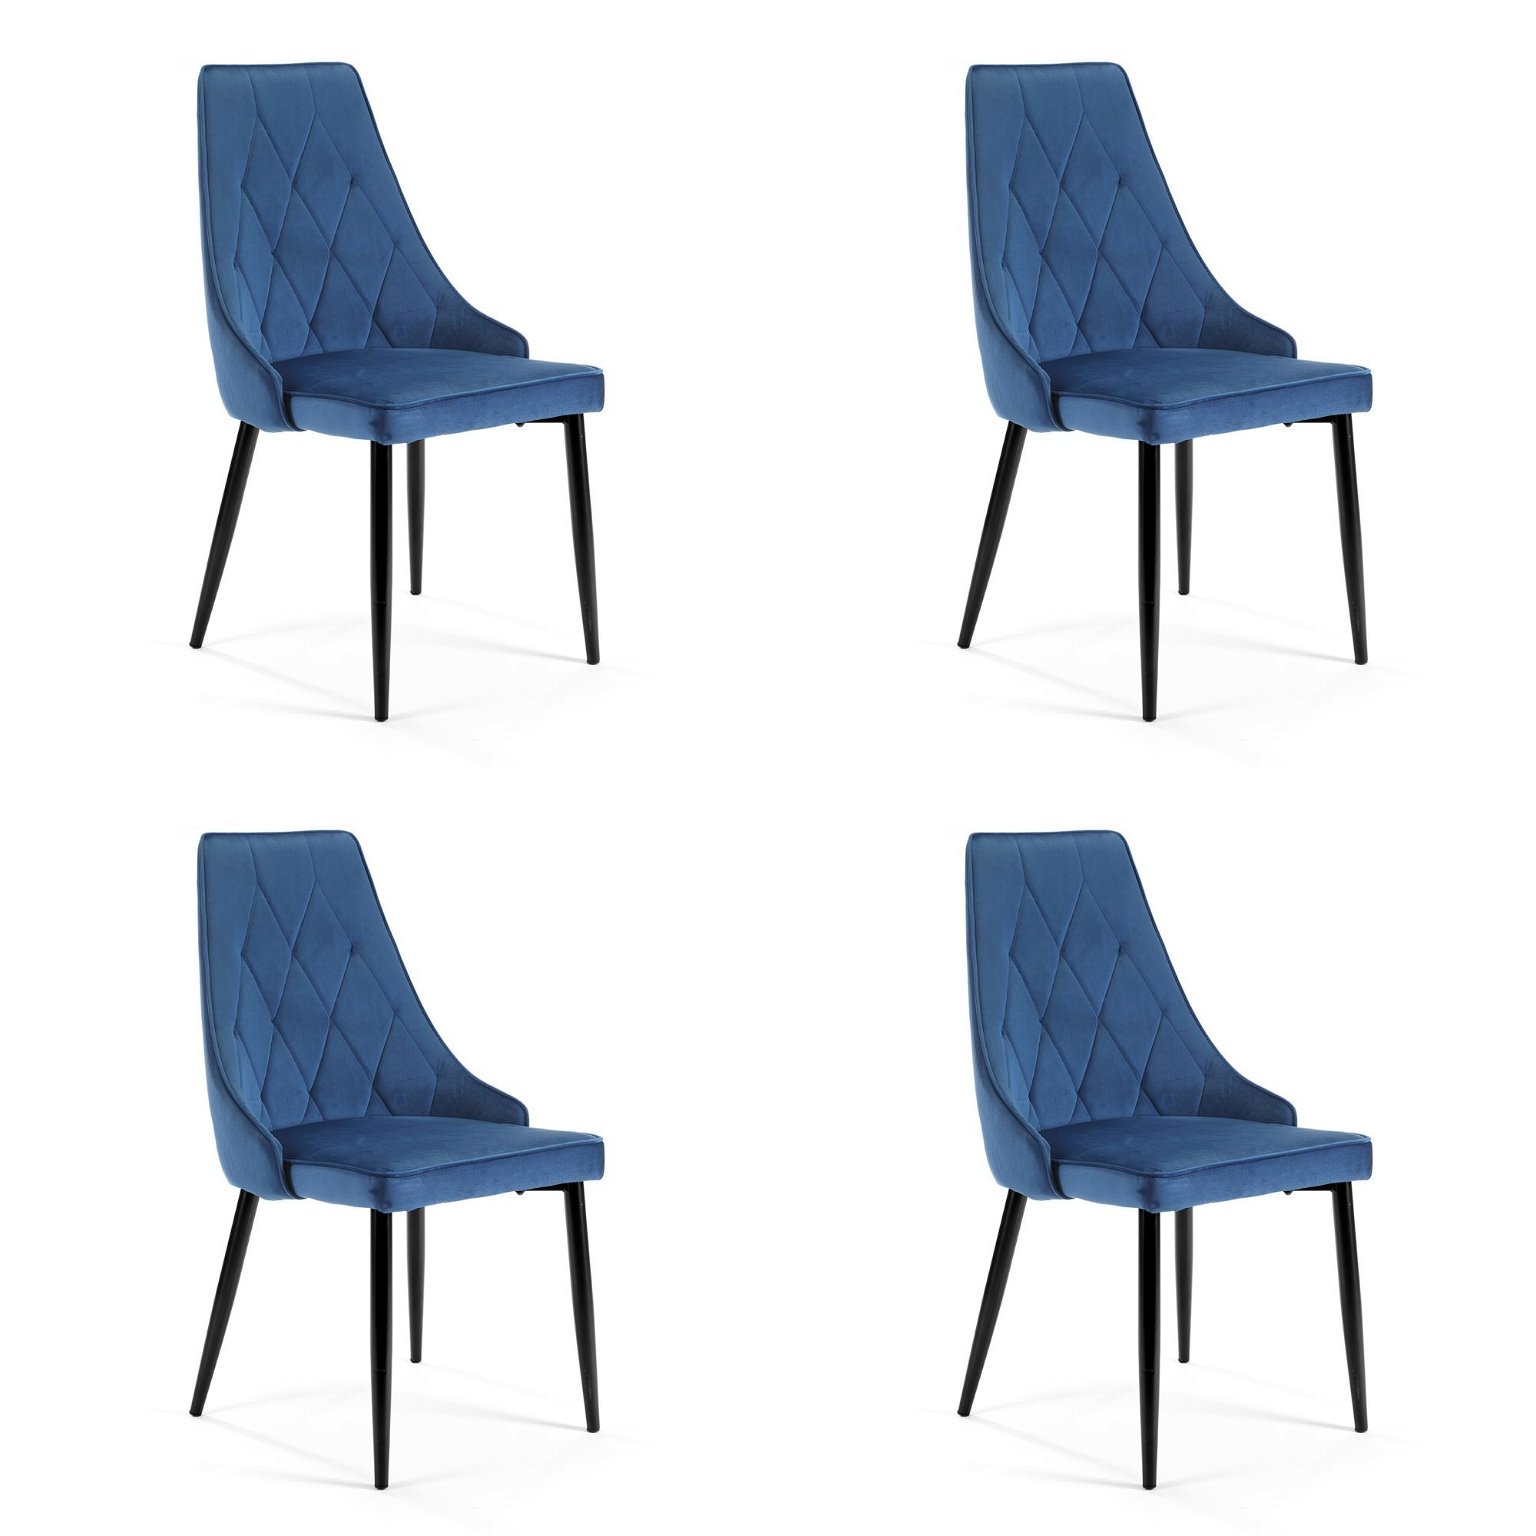 4-rių kėdžių komplektas SJ.054, tamsiai mėlynas - 2